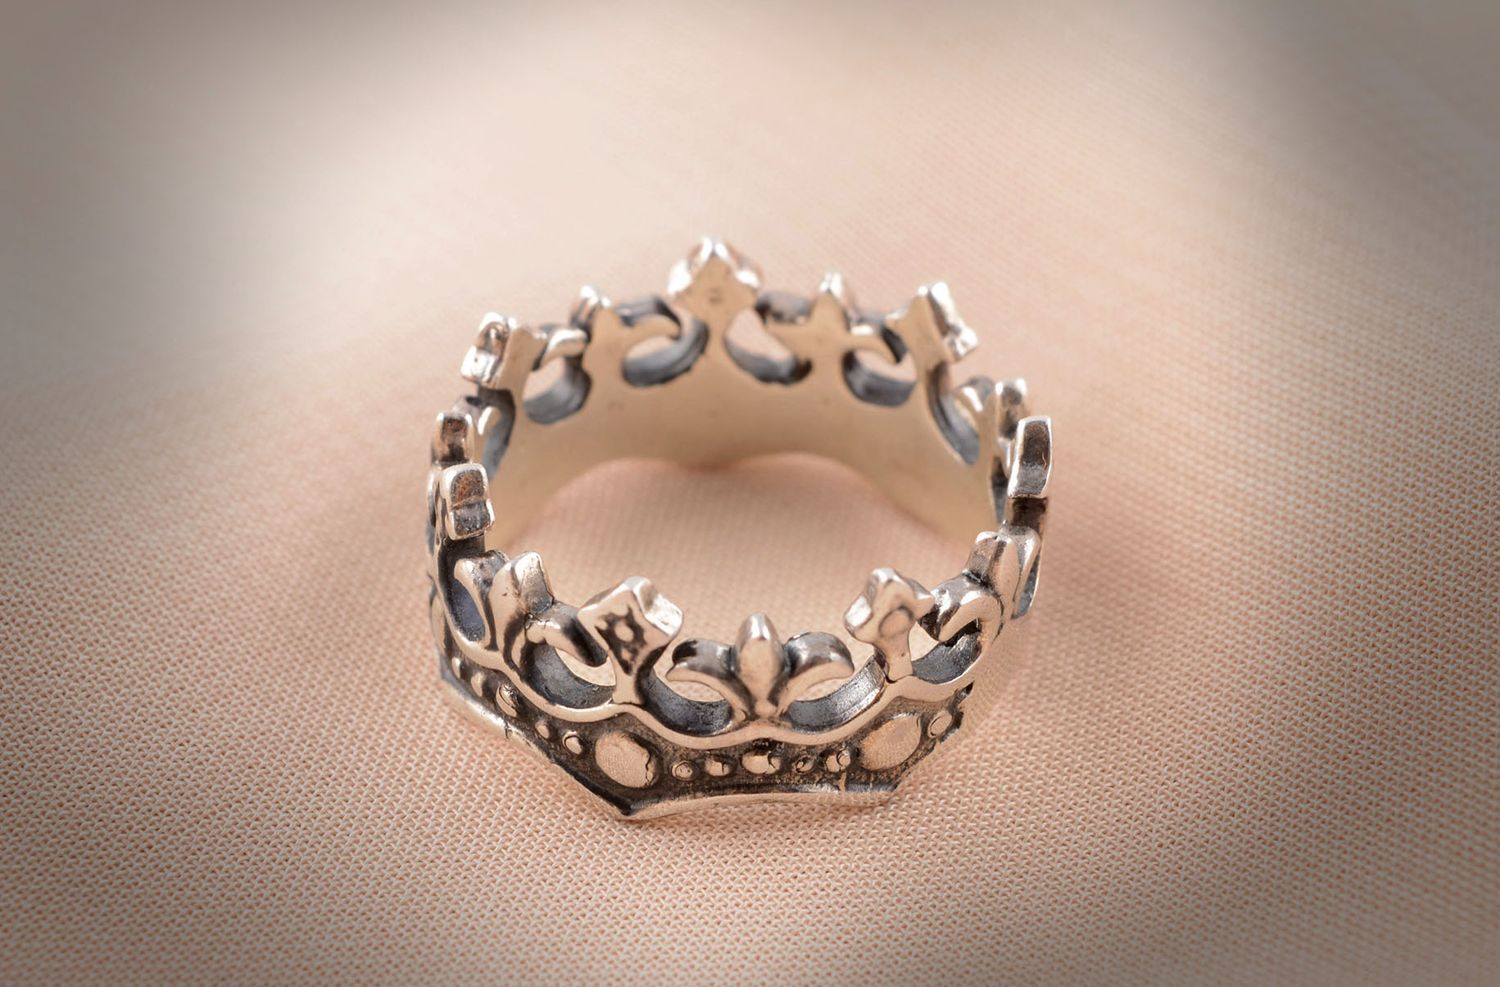 Кольцо ручной работы бронзовое кольцо симпатичное женское кольцо в виде короны фото 5